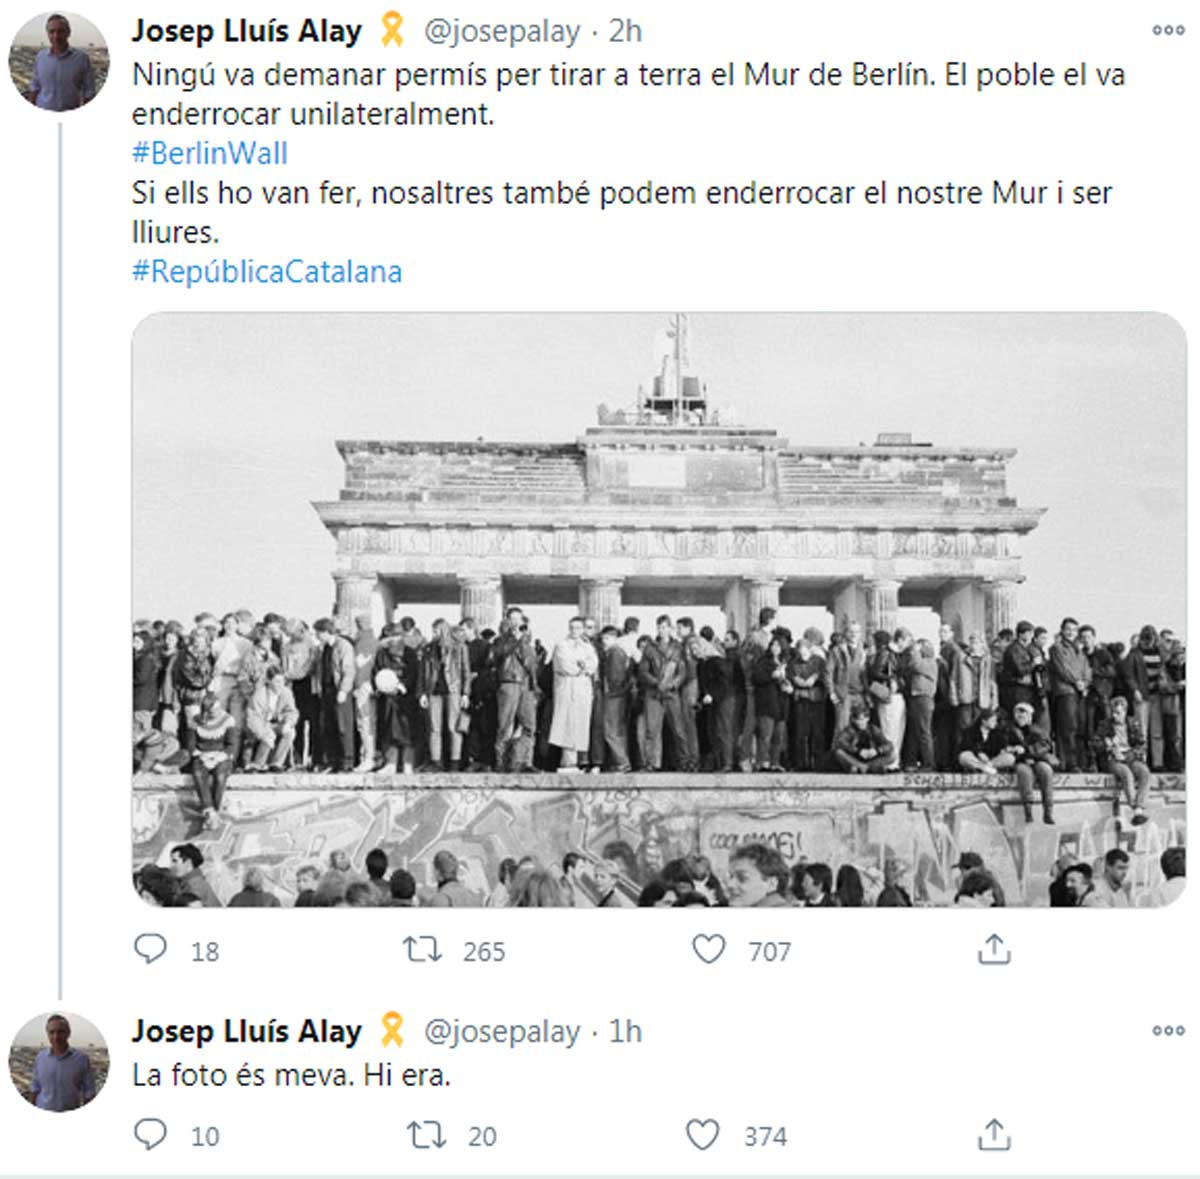 Tuit de Josep Lluís Alay comparando a Cataluña con la RDA y el muro de Berlín / @josepalay (TWITTER)